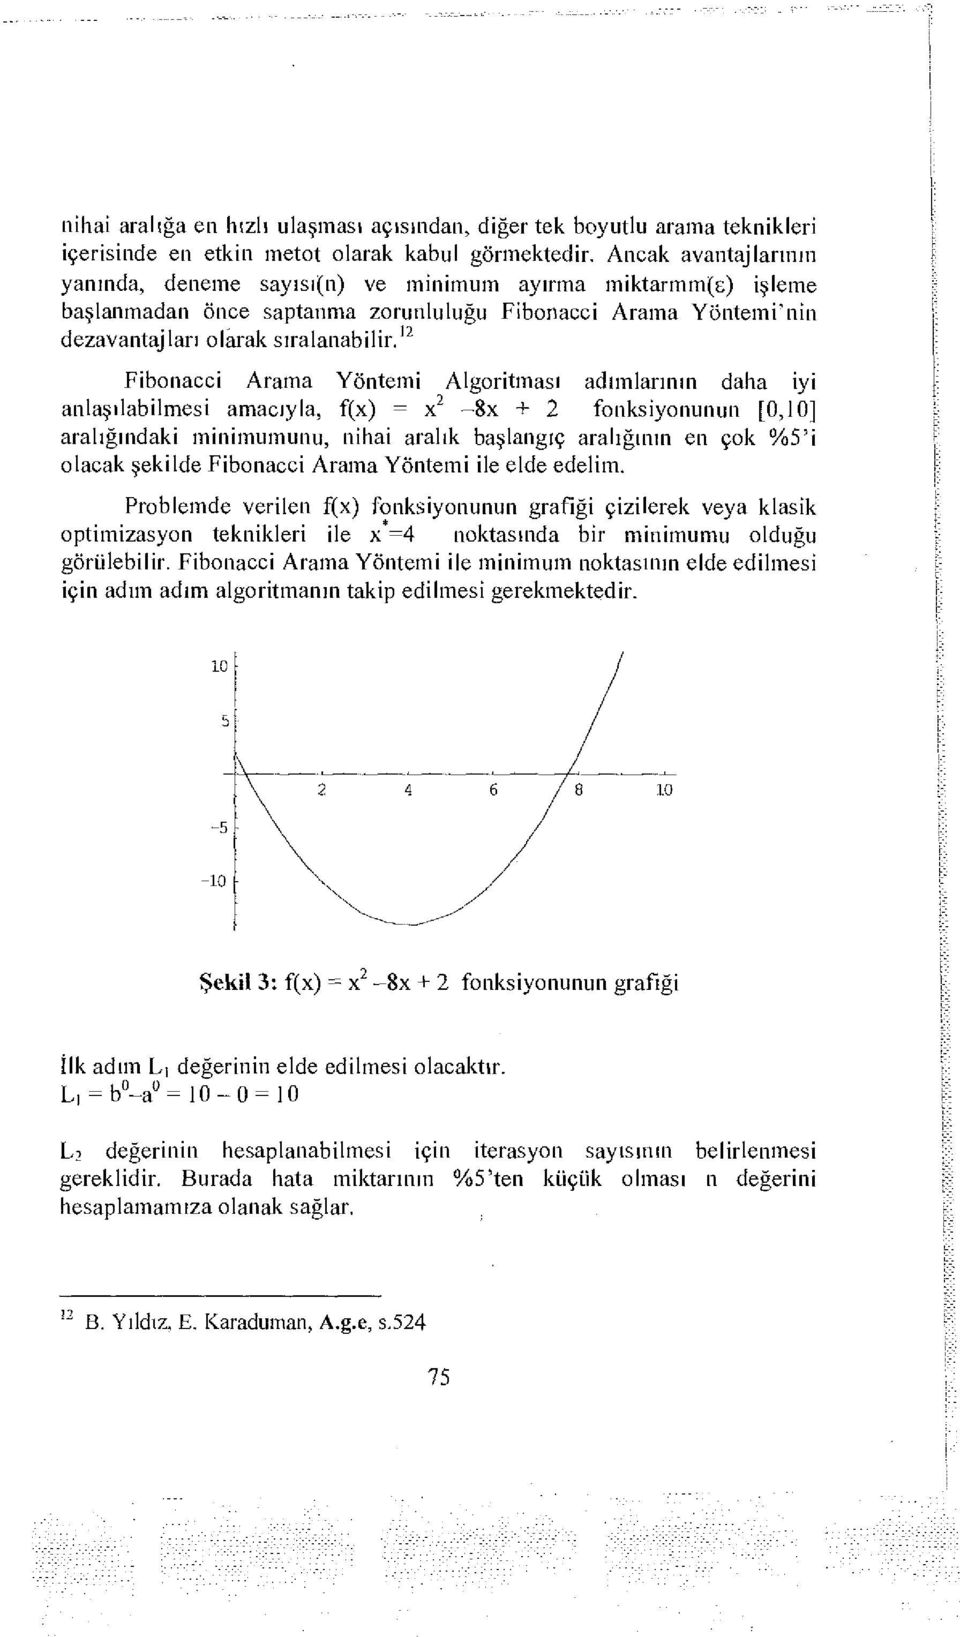 12 Fibonacci Arama Yöntemi Algoritması adımlarının daha iyi anlaşılabilmesi amacıyla, f(x) = x 2-8x + 2 fonksiyonunun [0,10] aralığındaki minimumunu, nihai aralık başlangıç aralığının en çok %5'i